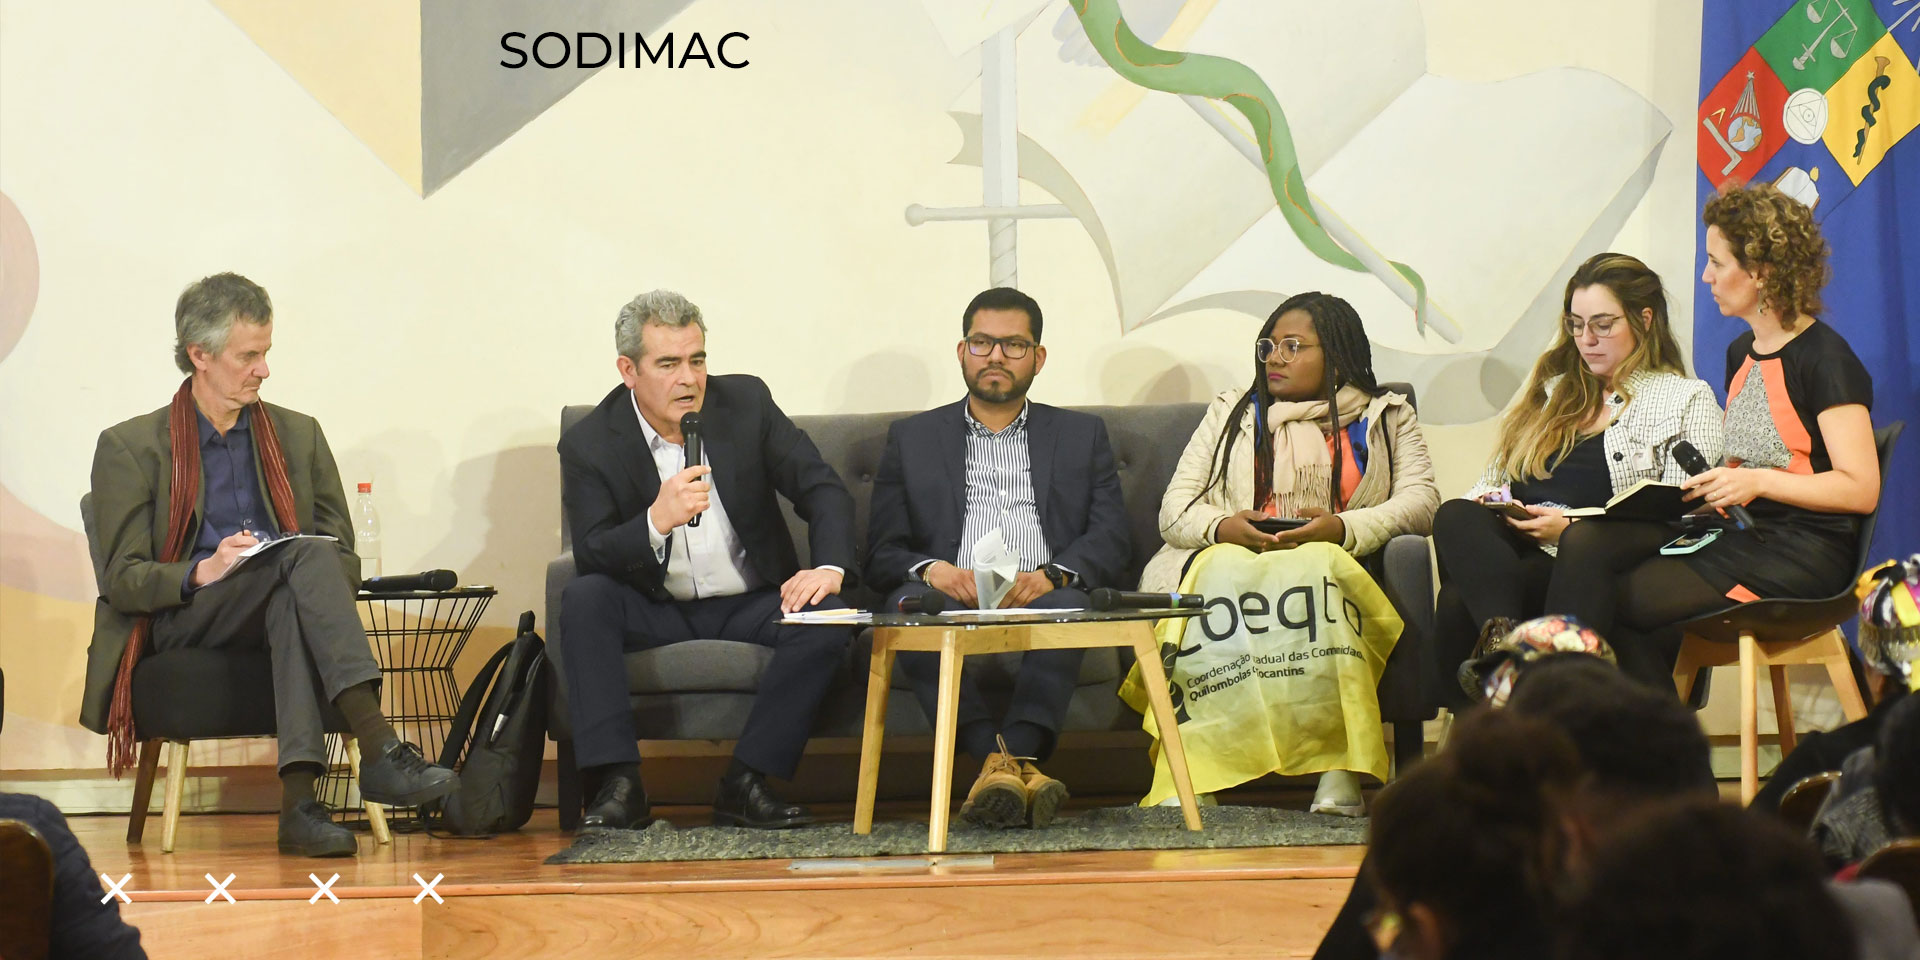 Sodimac participa en foro regional sobre Empresas y Derechos Humanos